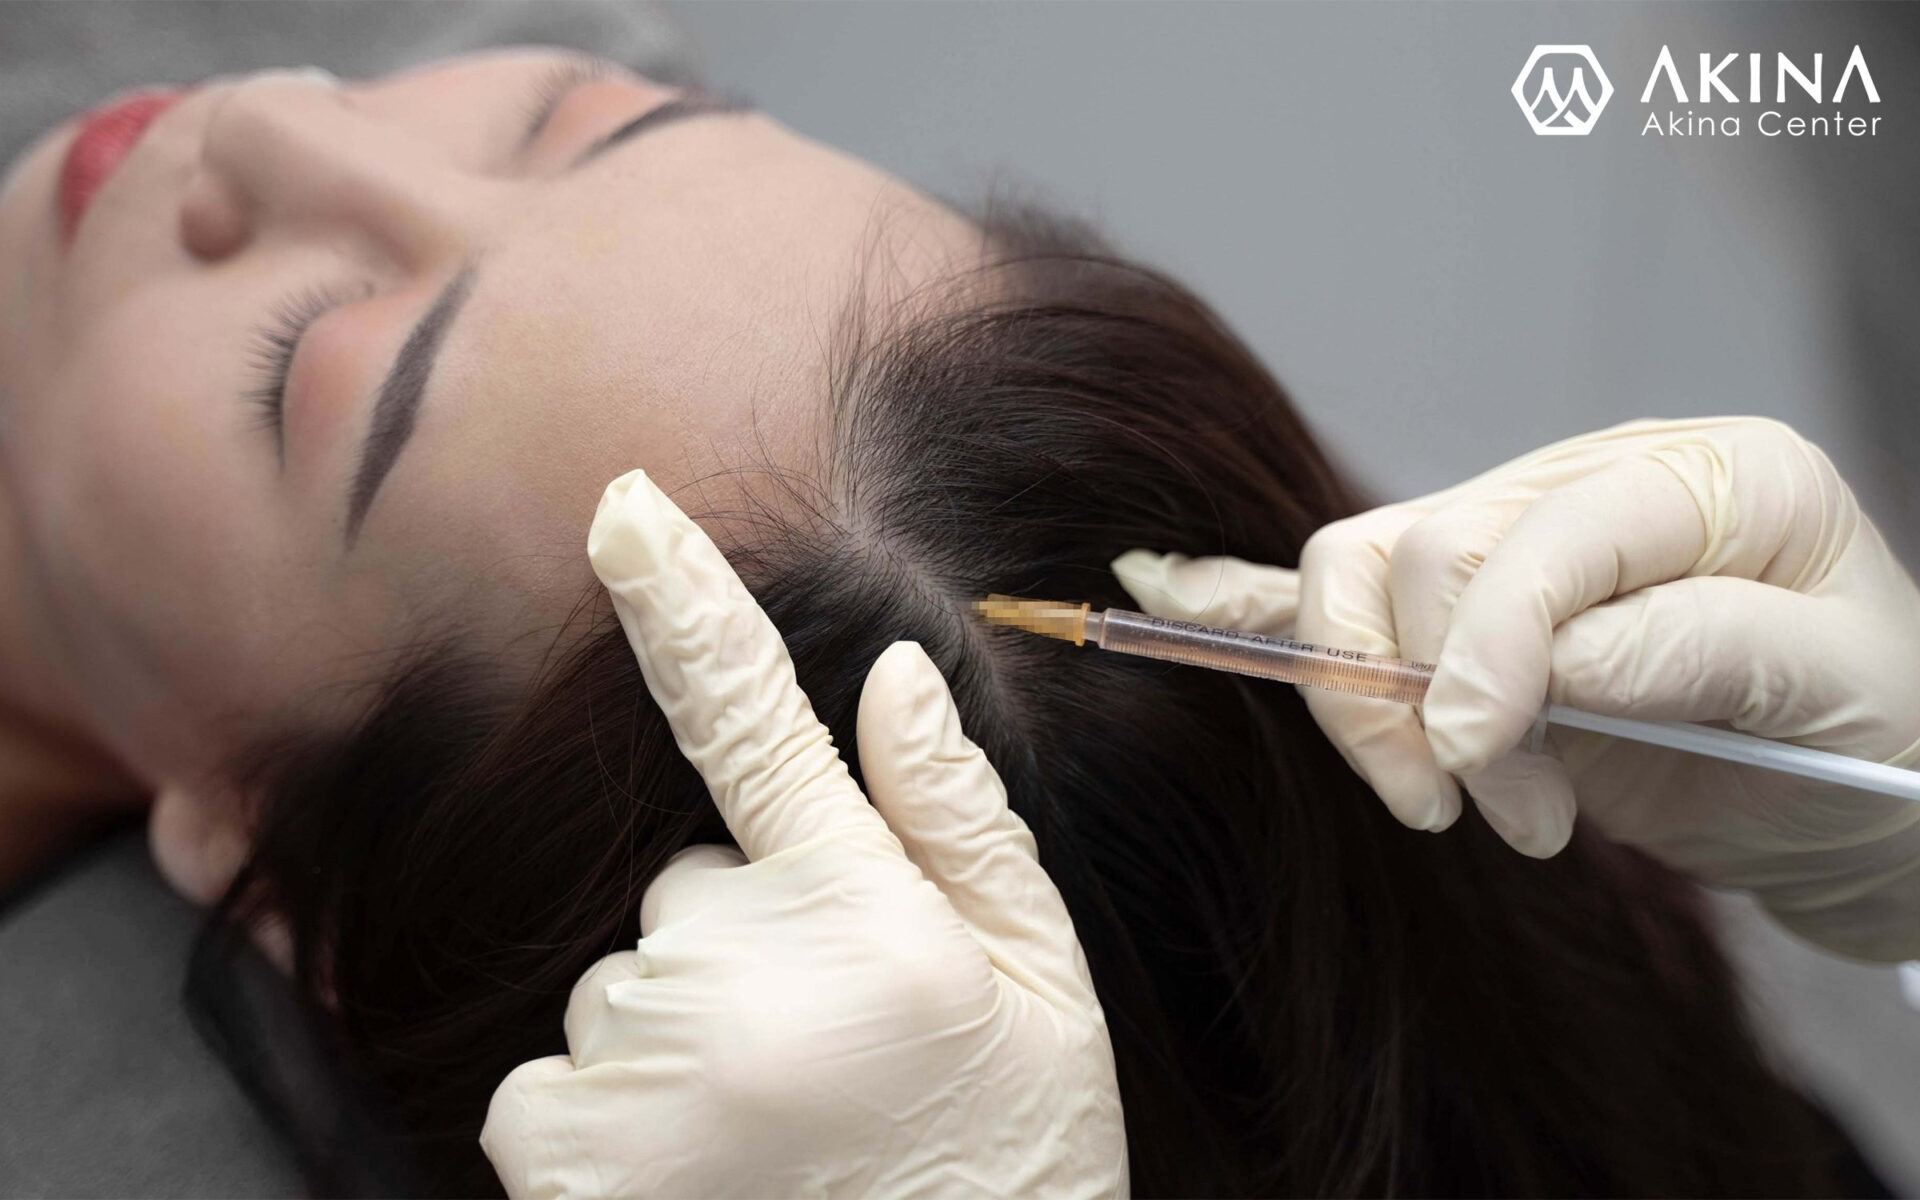 Phương pháp điều trị rụng tóc, hói tóc công nghệ cao - Điều trị rụng tóc, hói tóc tại Đà Nẵng